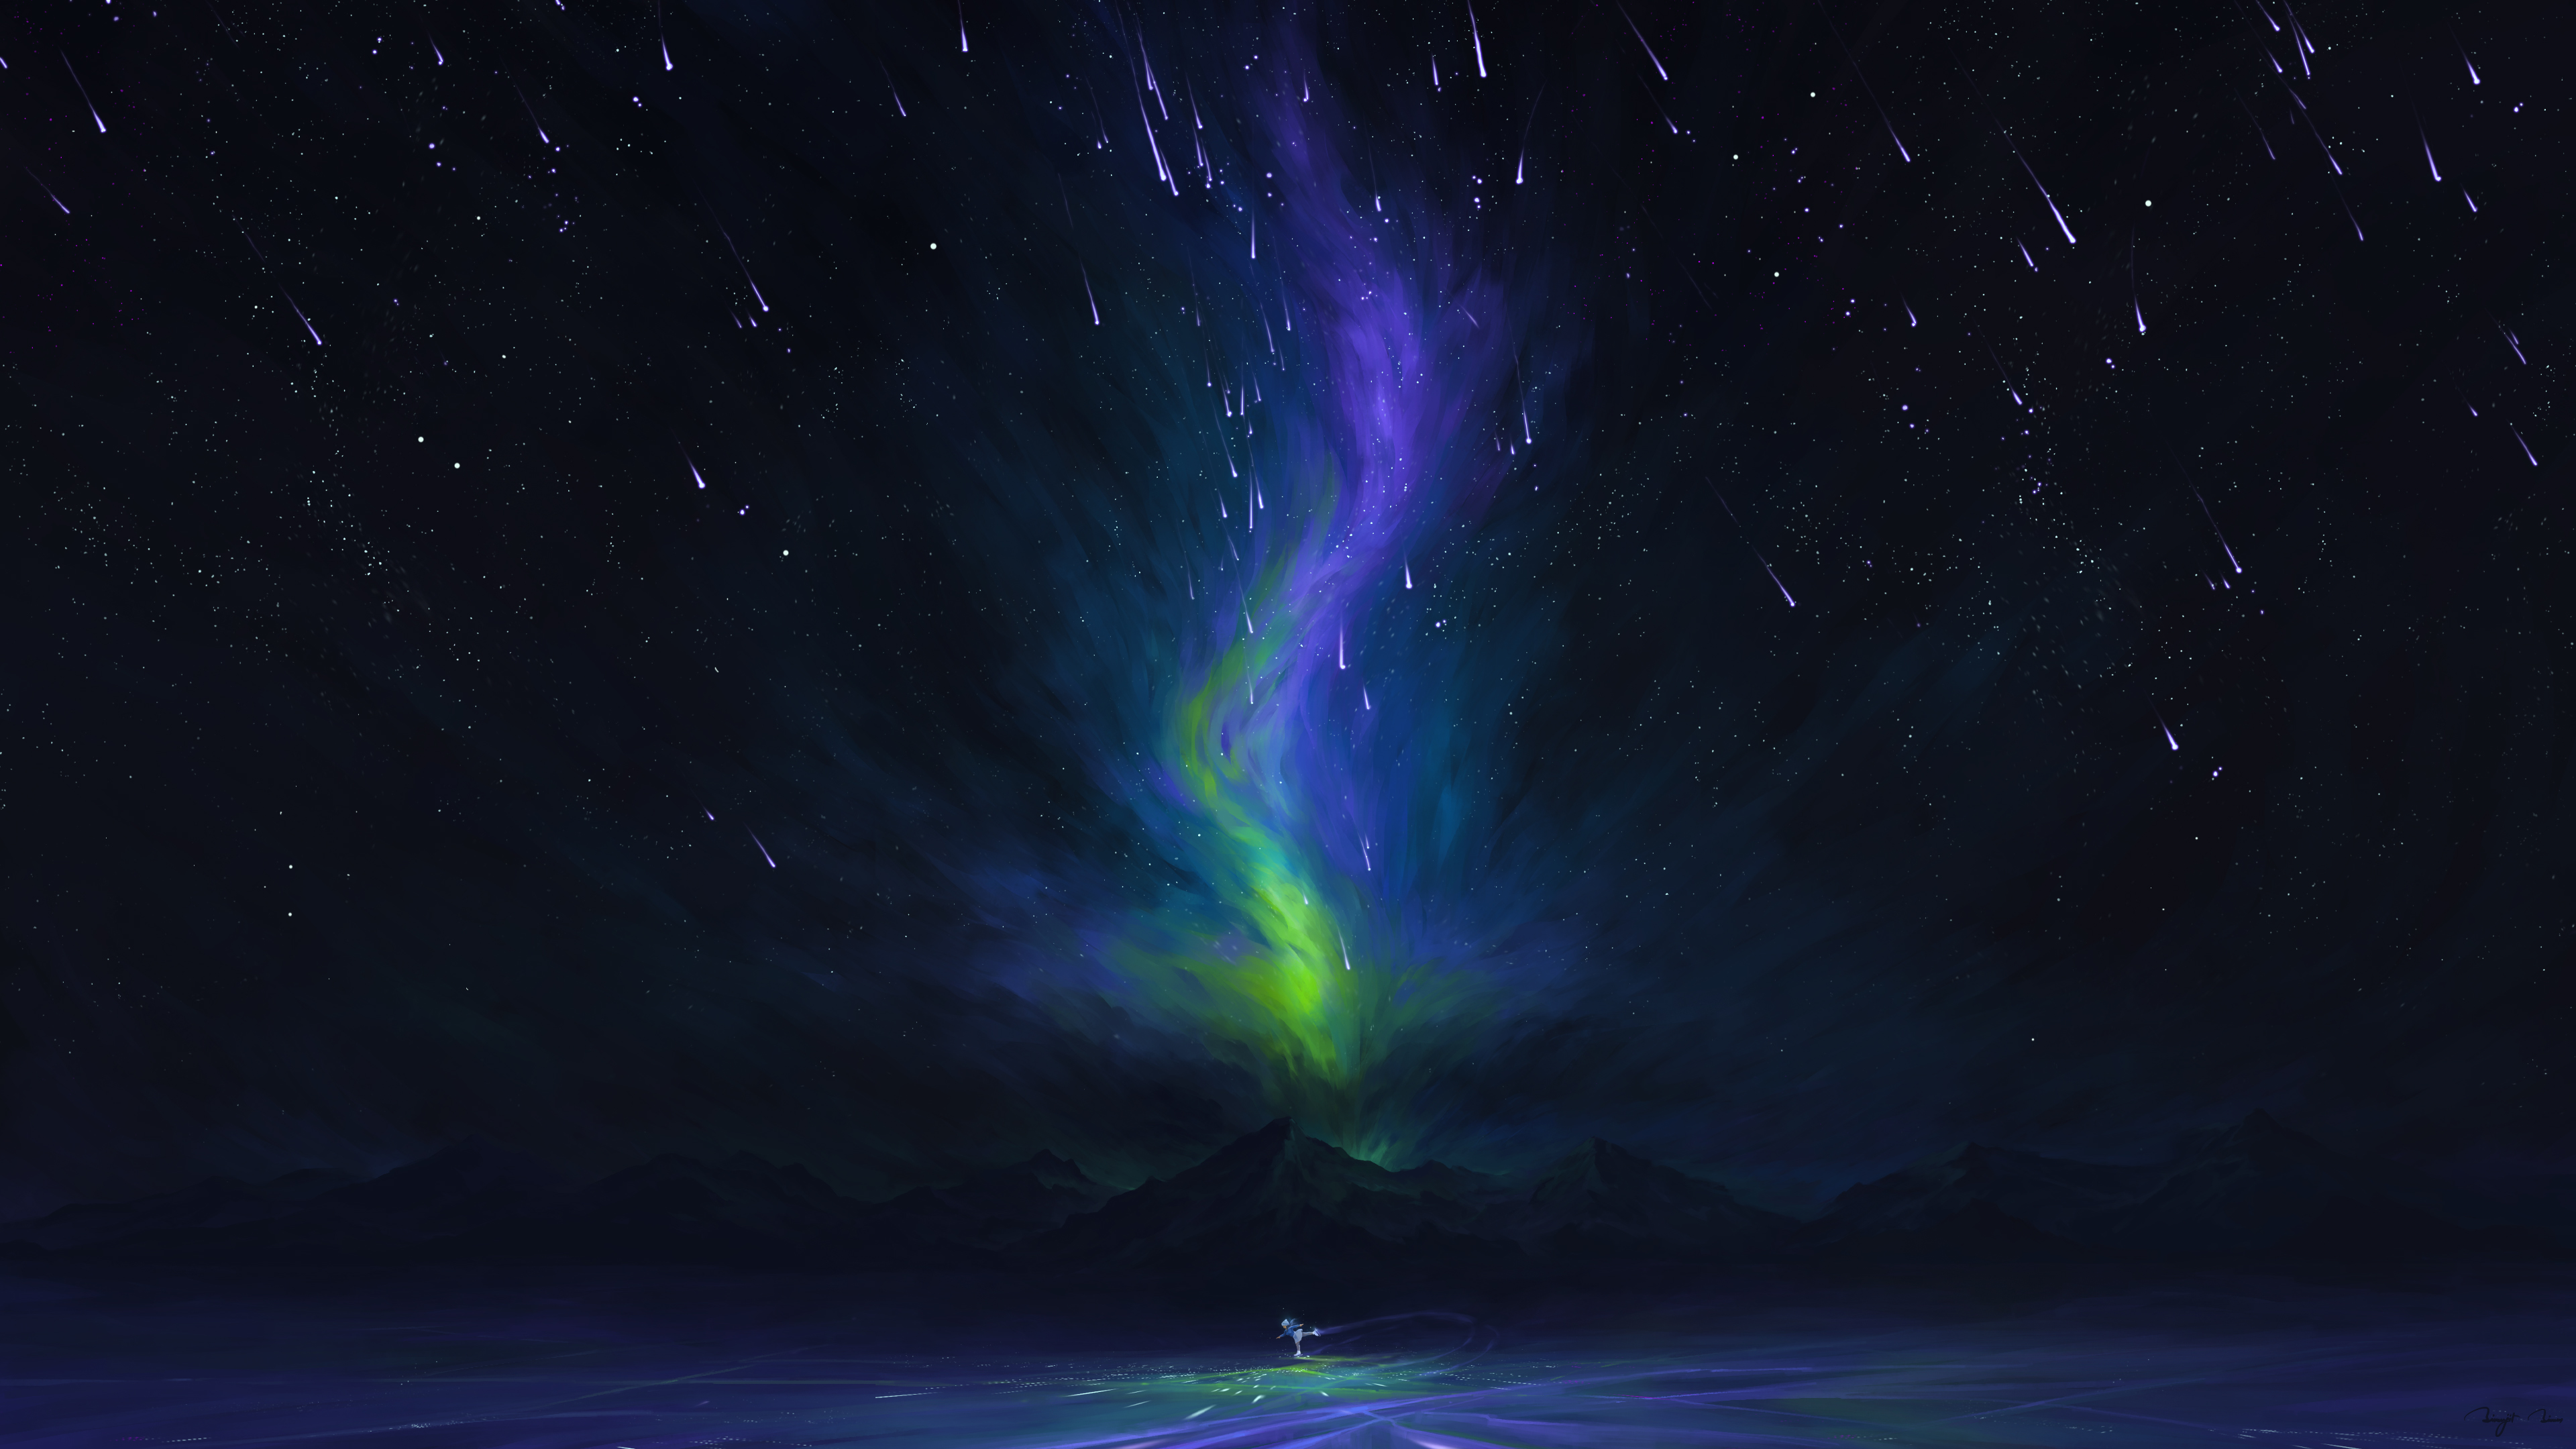 BisBiswas Digital Art Artwork Illustration Landscape Clouds Night Nightscape Stars Starred Sky Mount 3840x2160